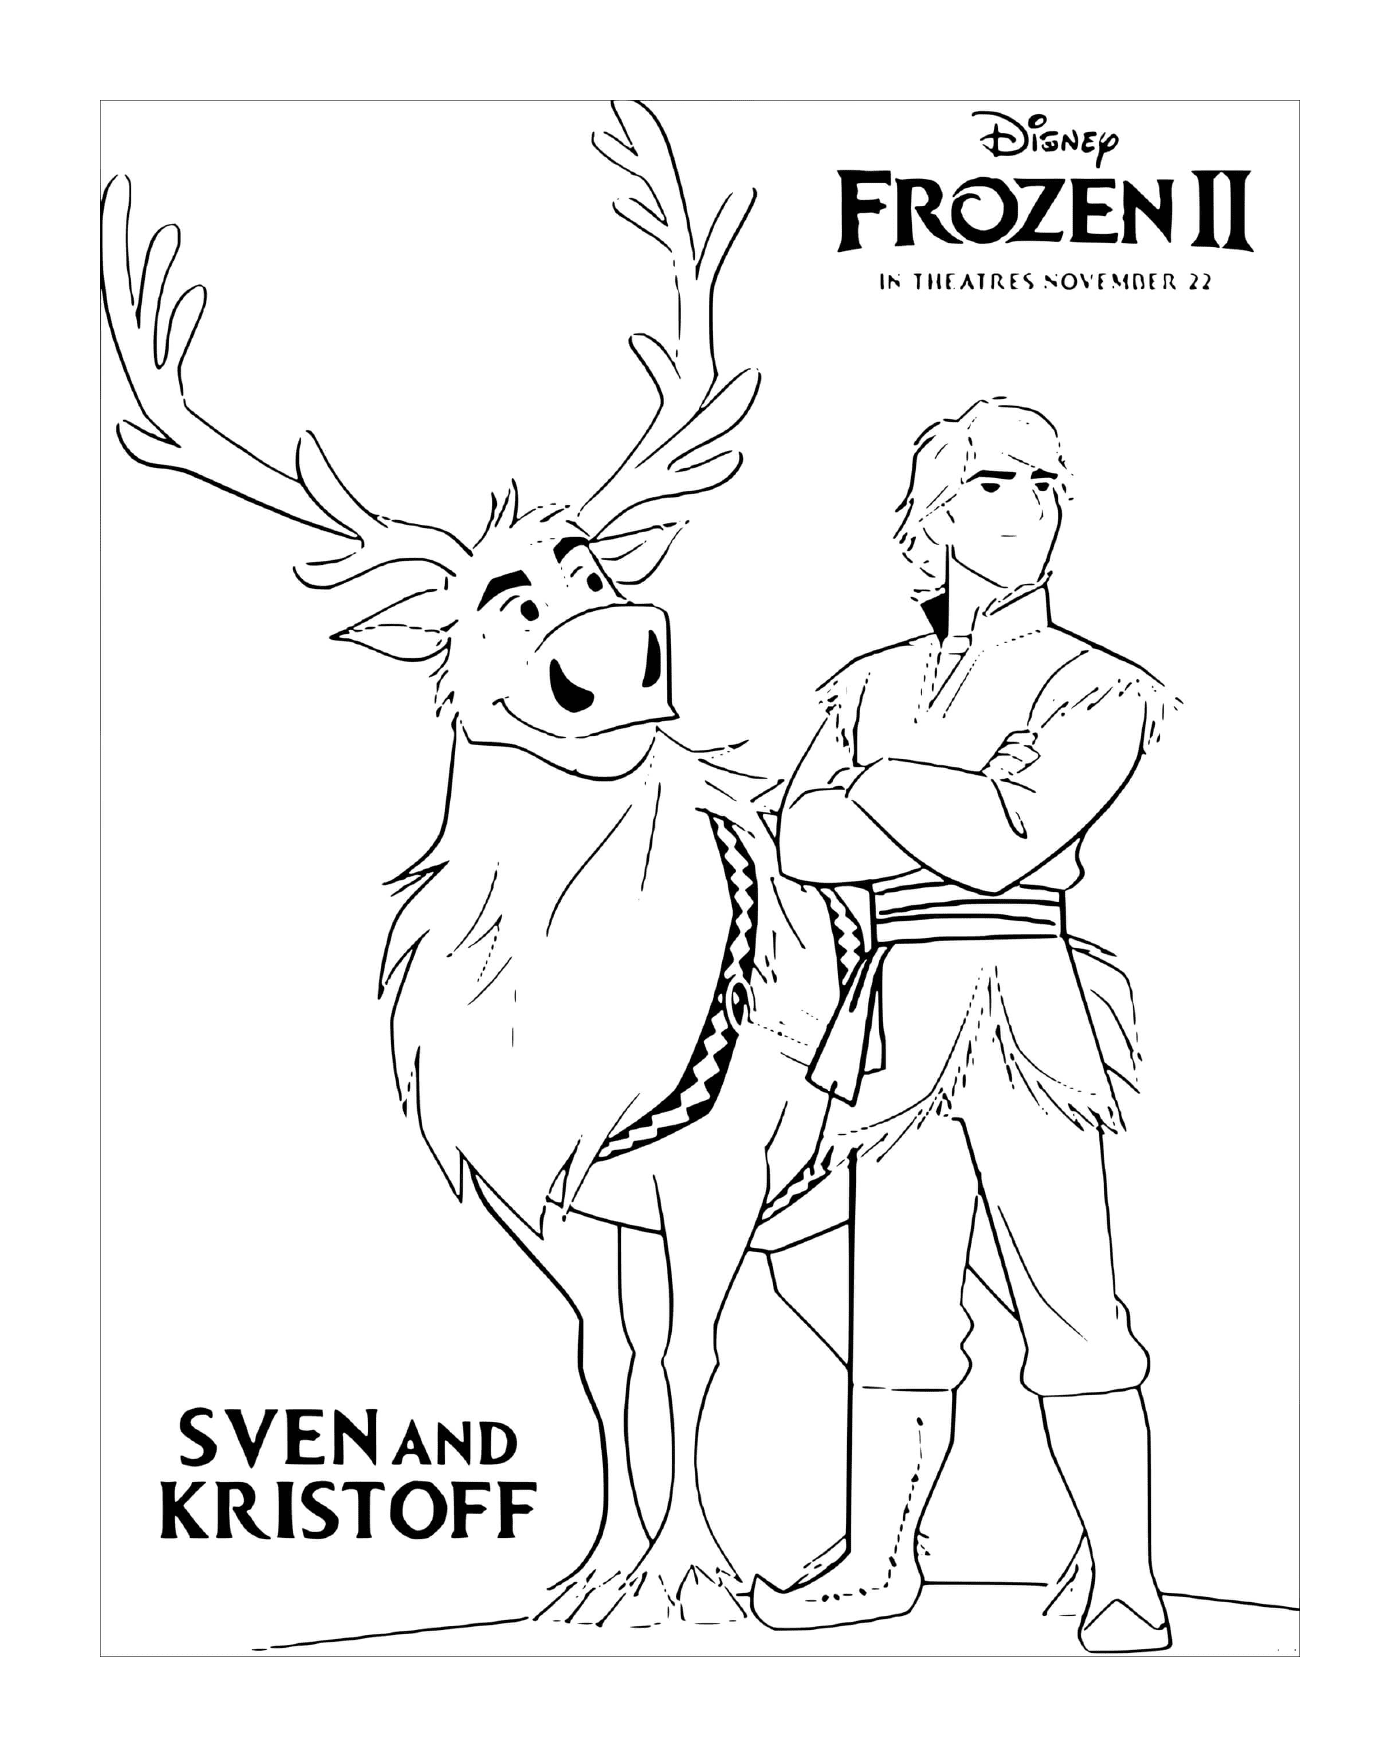  Sven y Kristoff están buscando a Elsa 